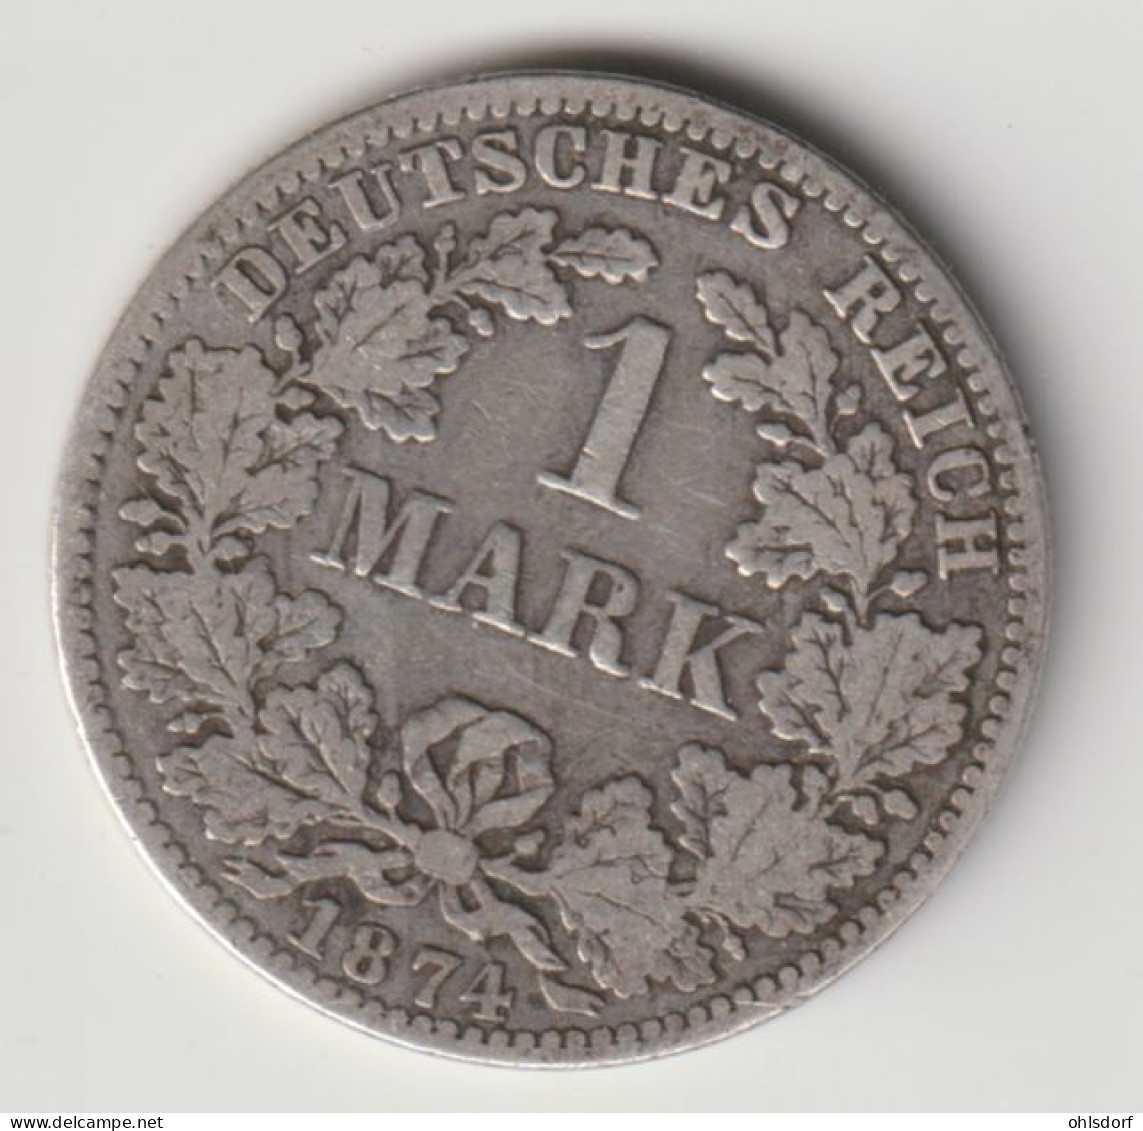 DEUTSCHES REICH 1874 A: 1 Mark, Silver, KM 7 - 1 Mark